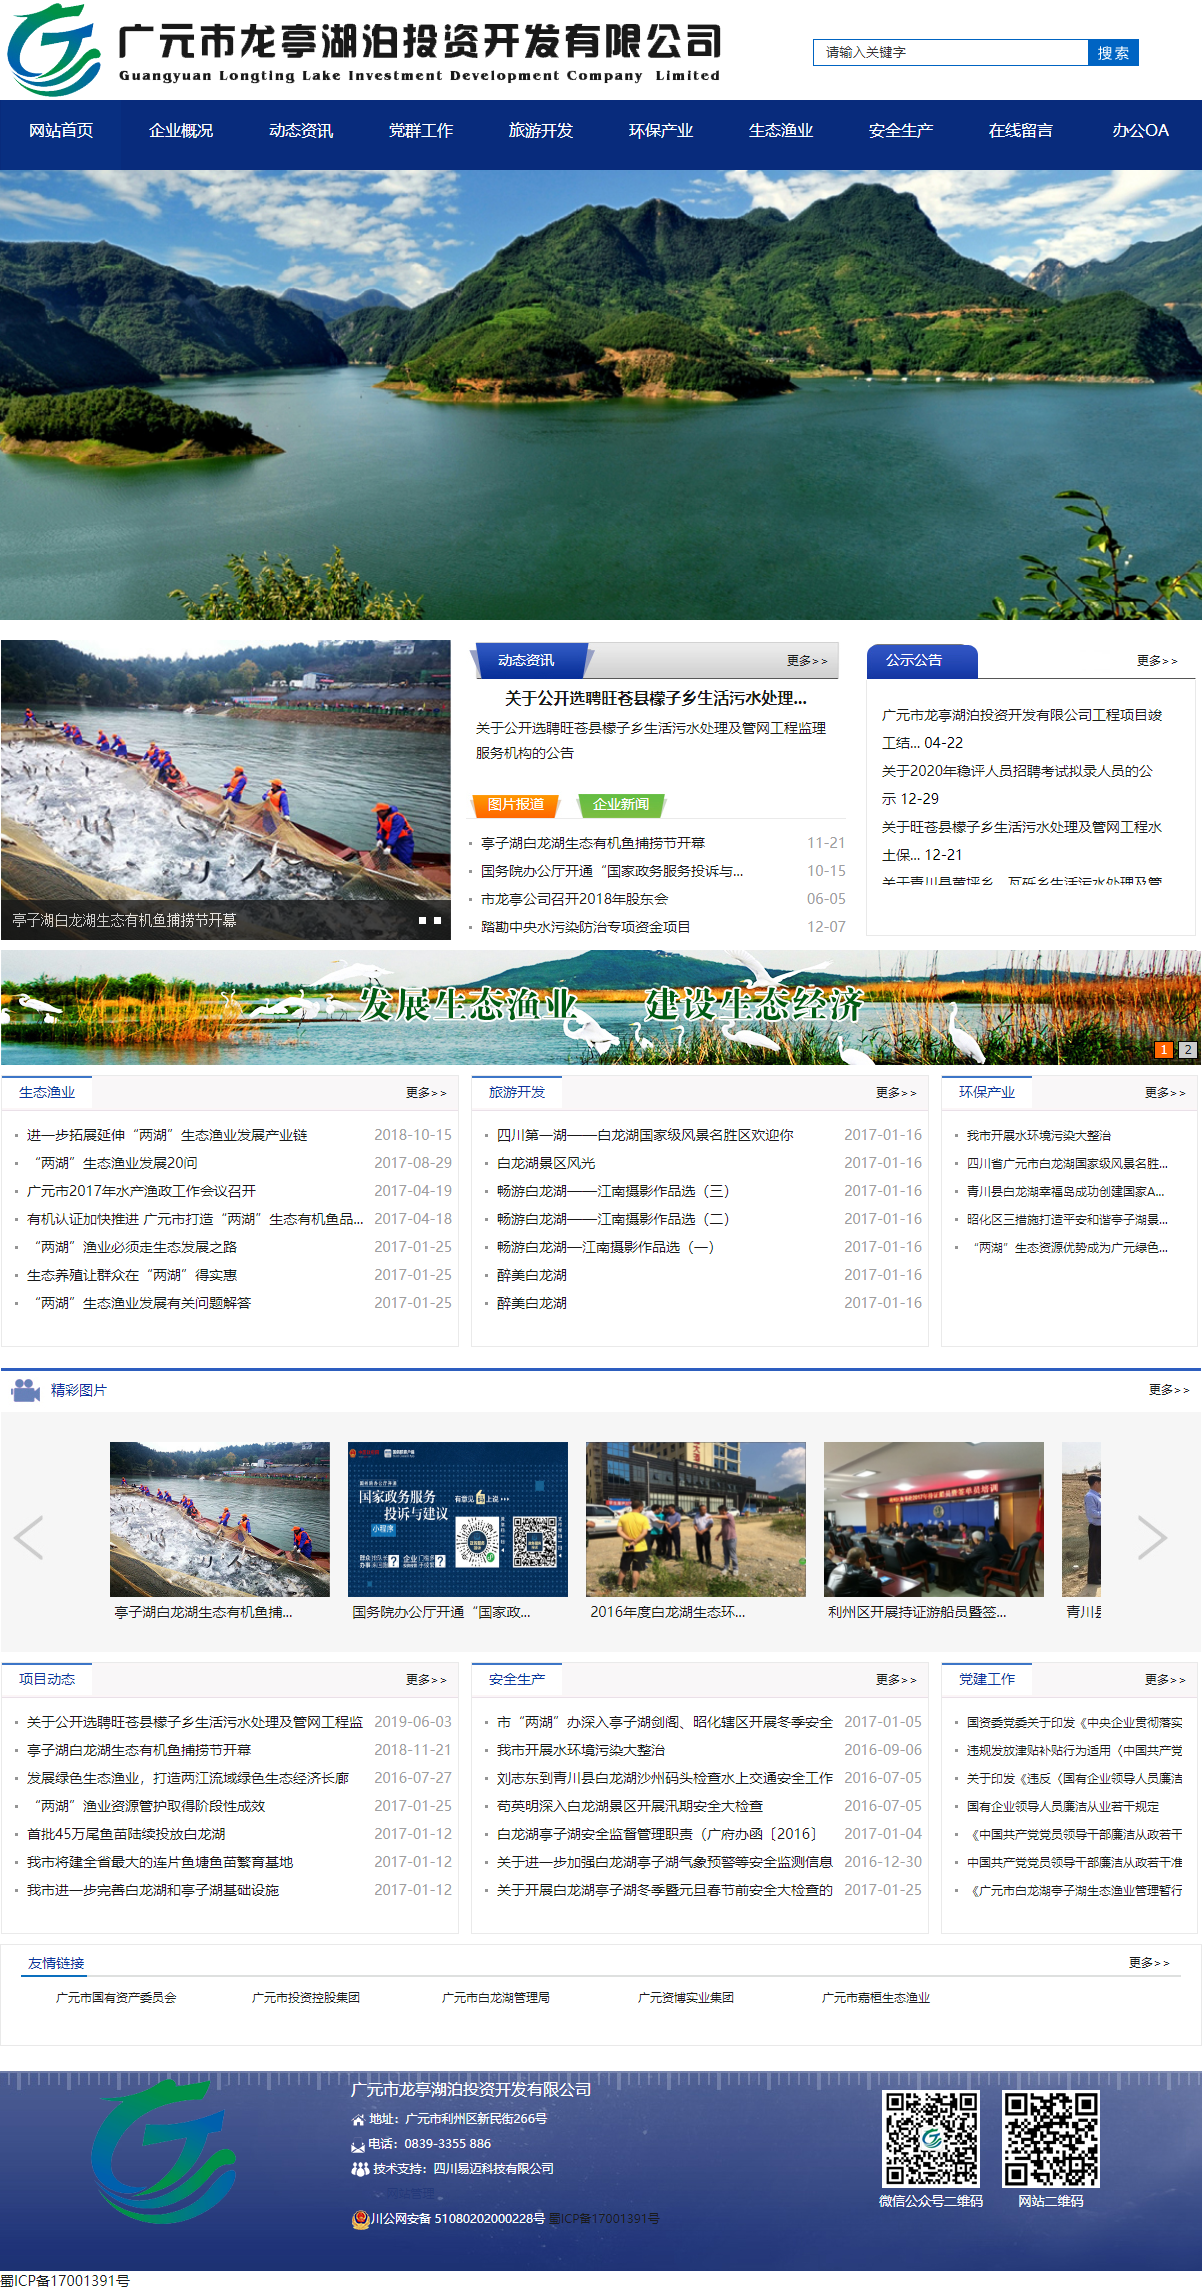 广元市龙亭湖泊投资开发有限公司网站案例